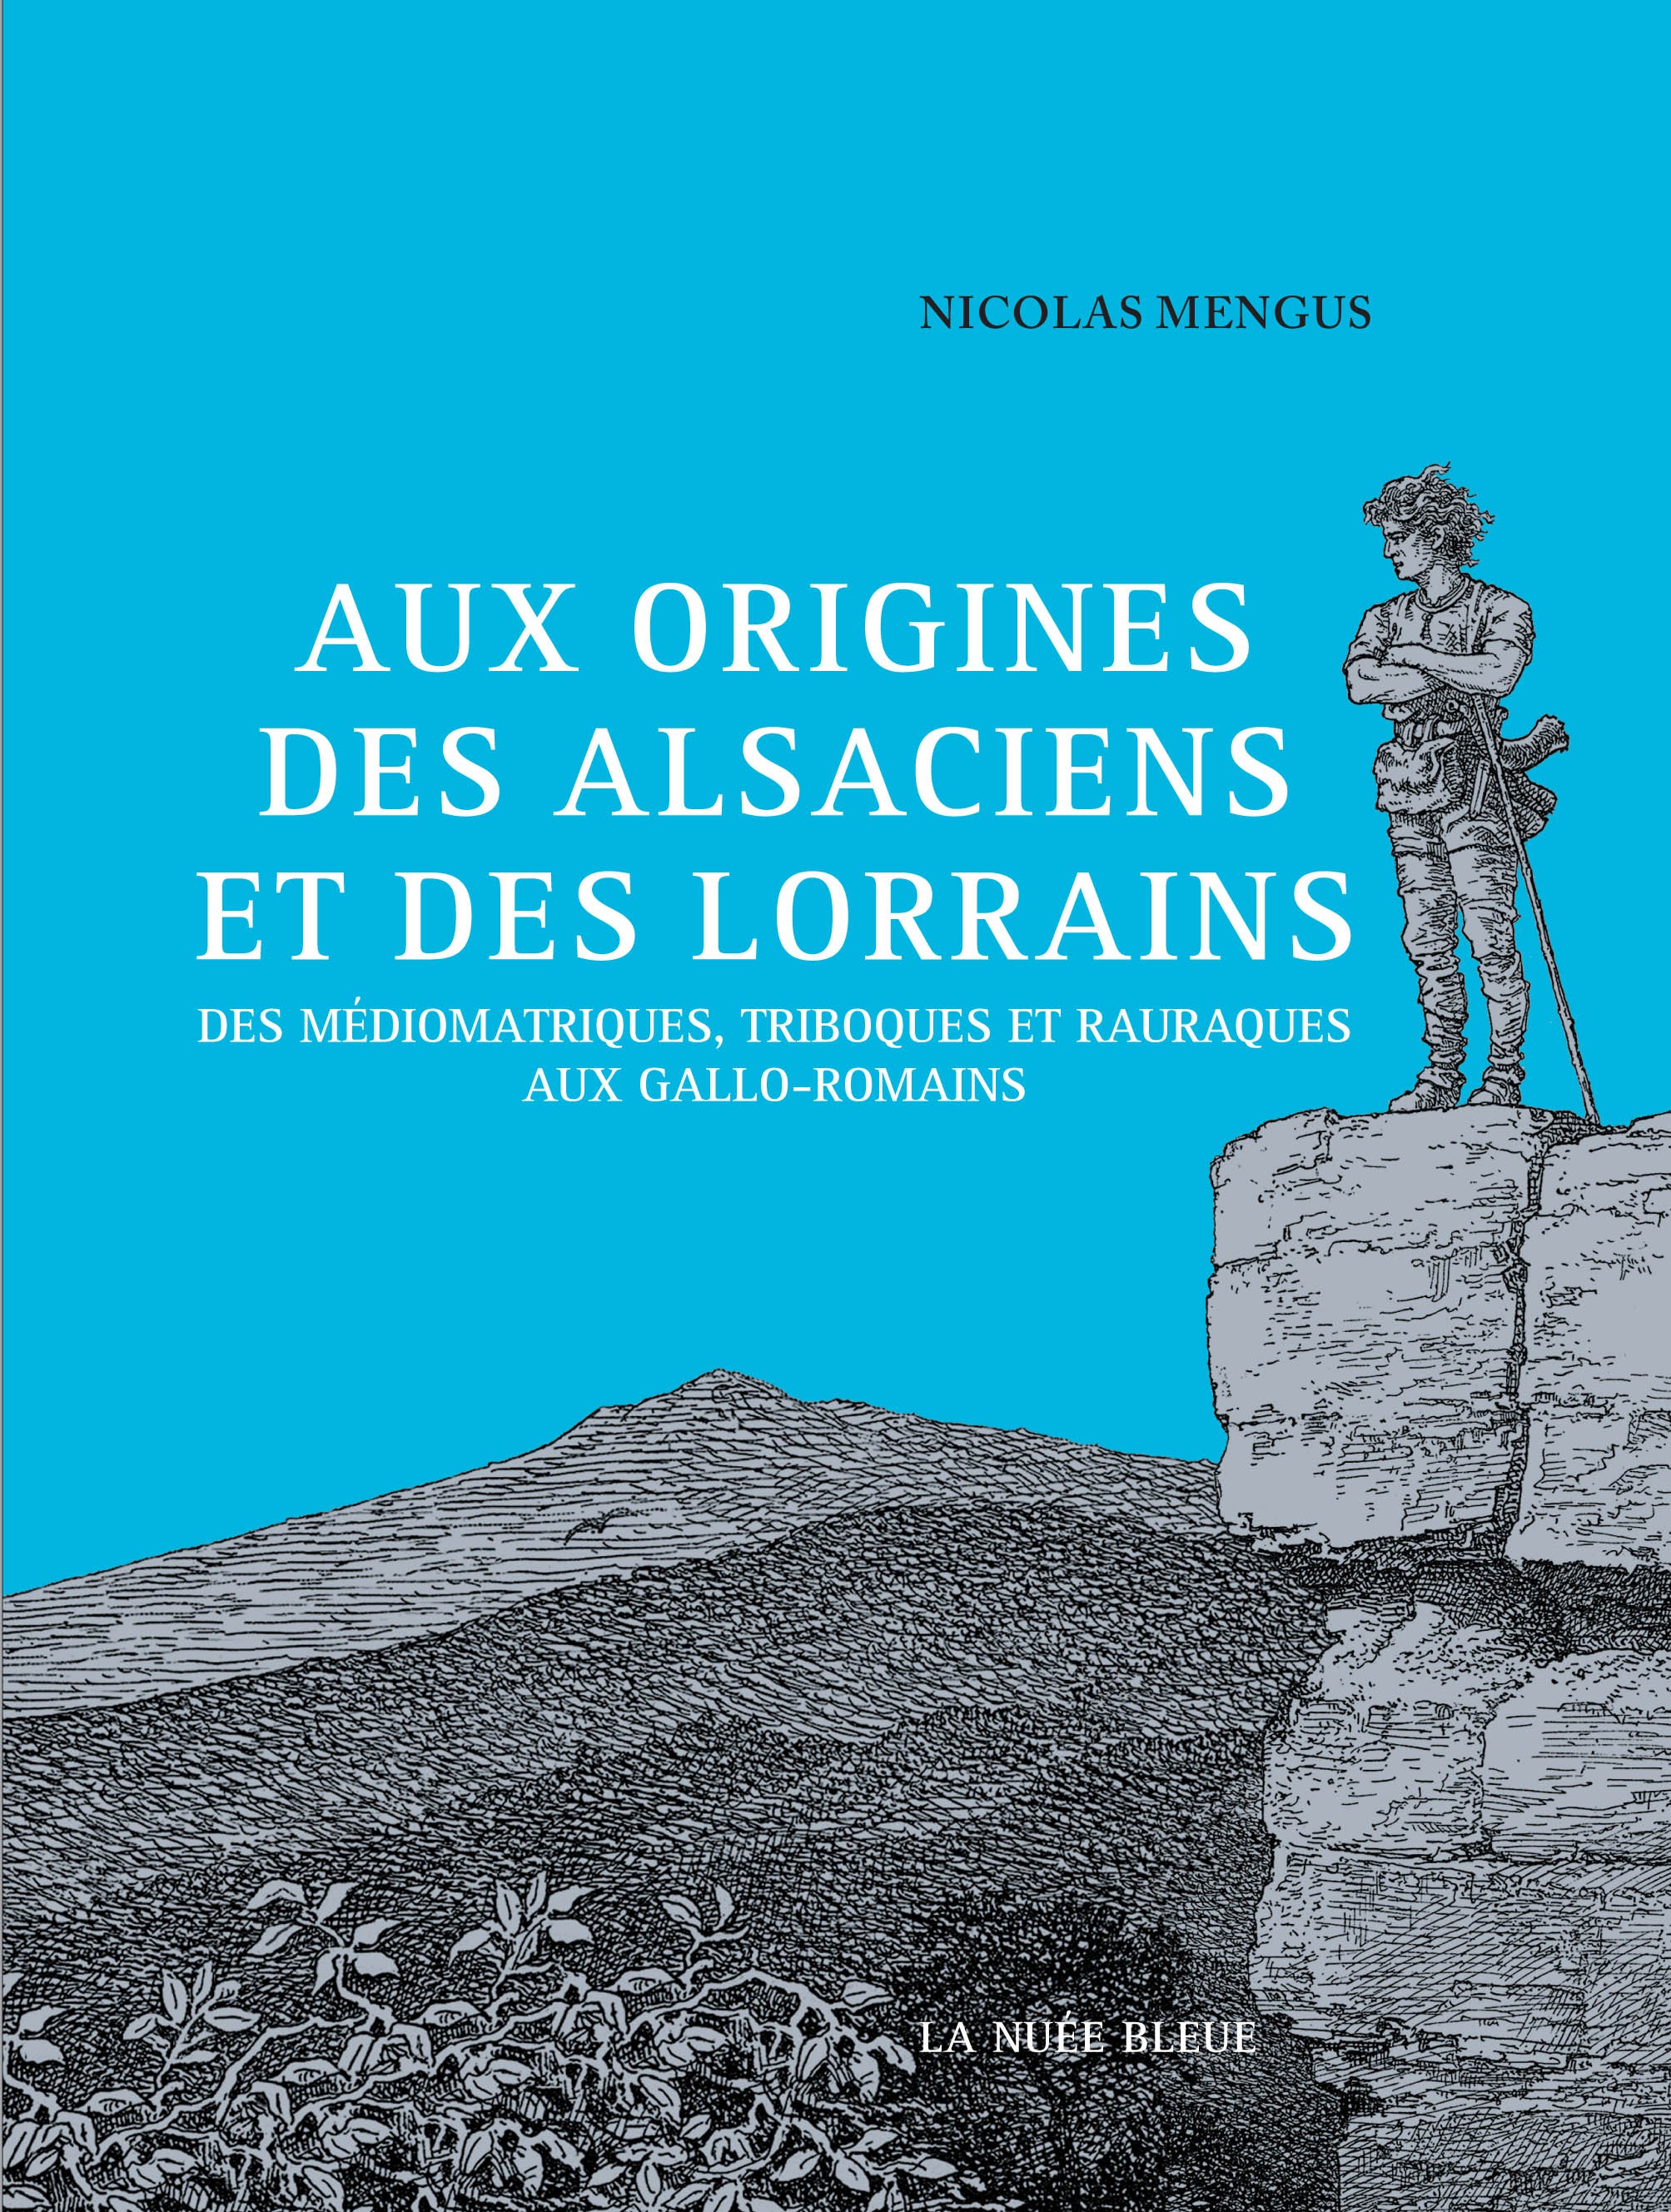 ÉPUISÉ - Aux origines des Alsaciens et des Lorrains. Des Médiomatriques, Triboques et Rauraques aux Gallo-Romains, 2017, 280 p.